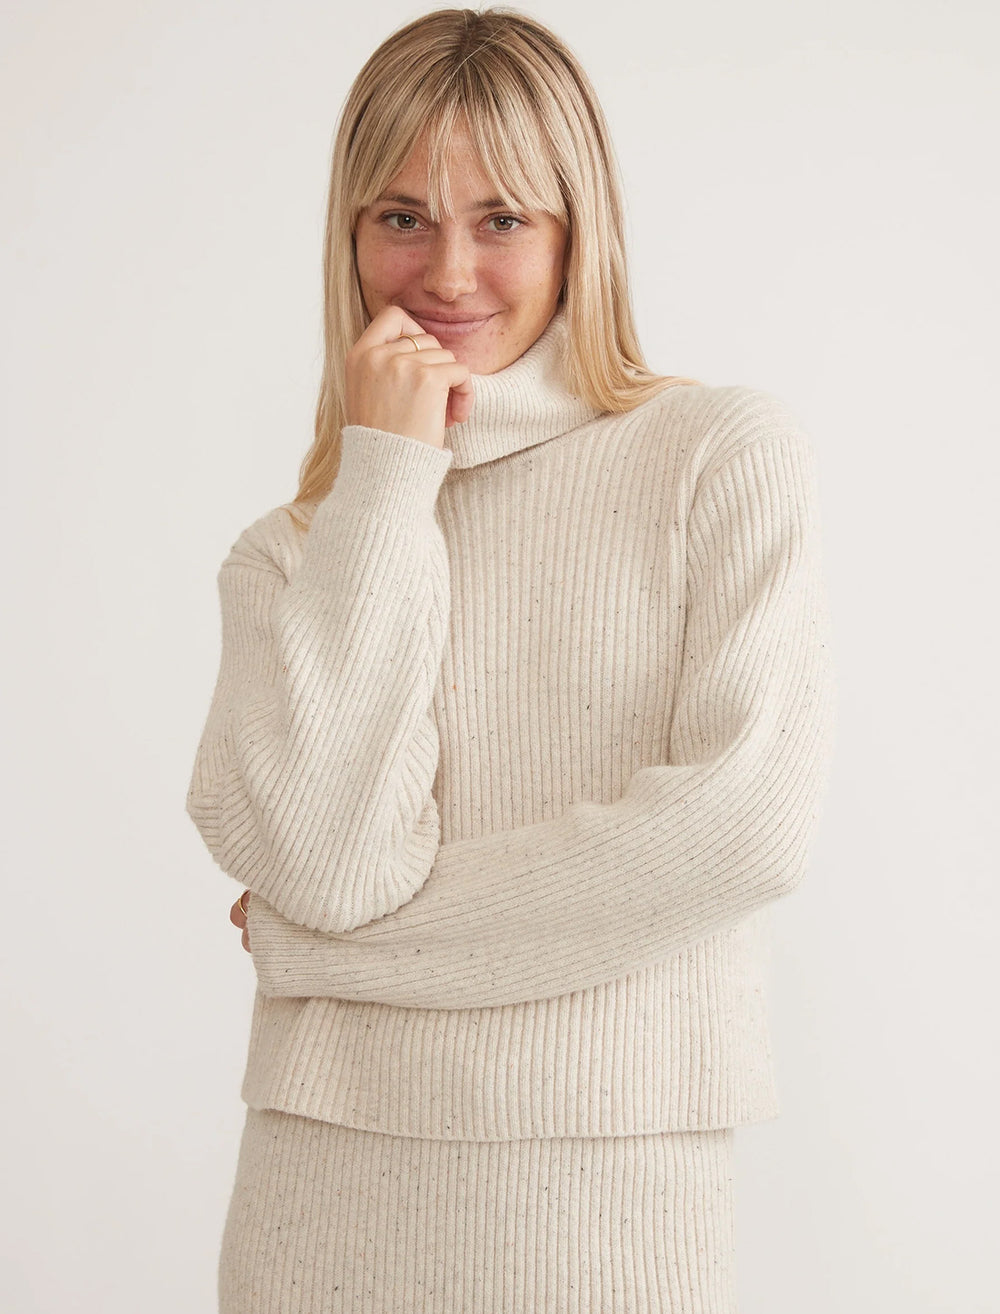 Model wearing Marine Layer's isla knit turtleneck in oatmeal.